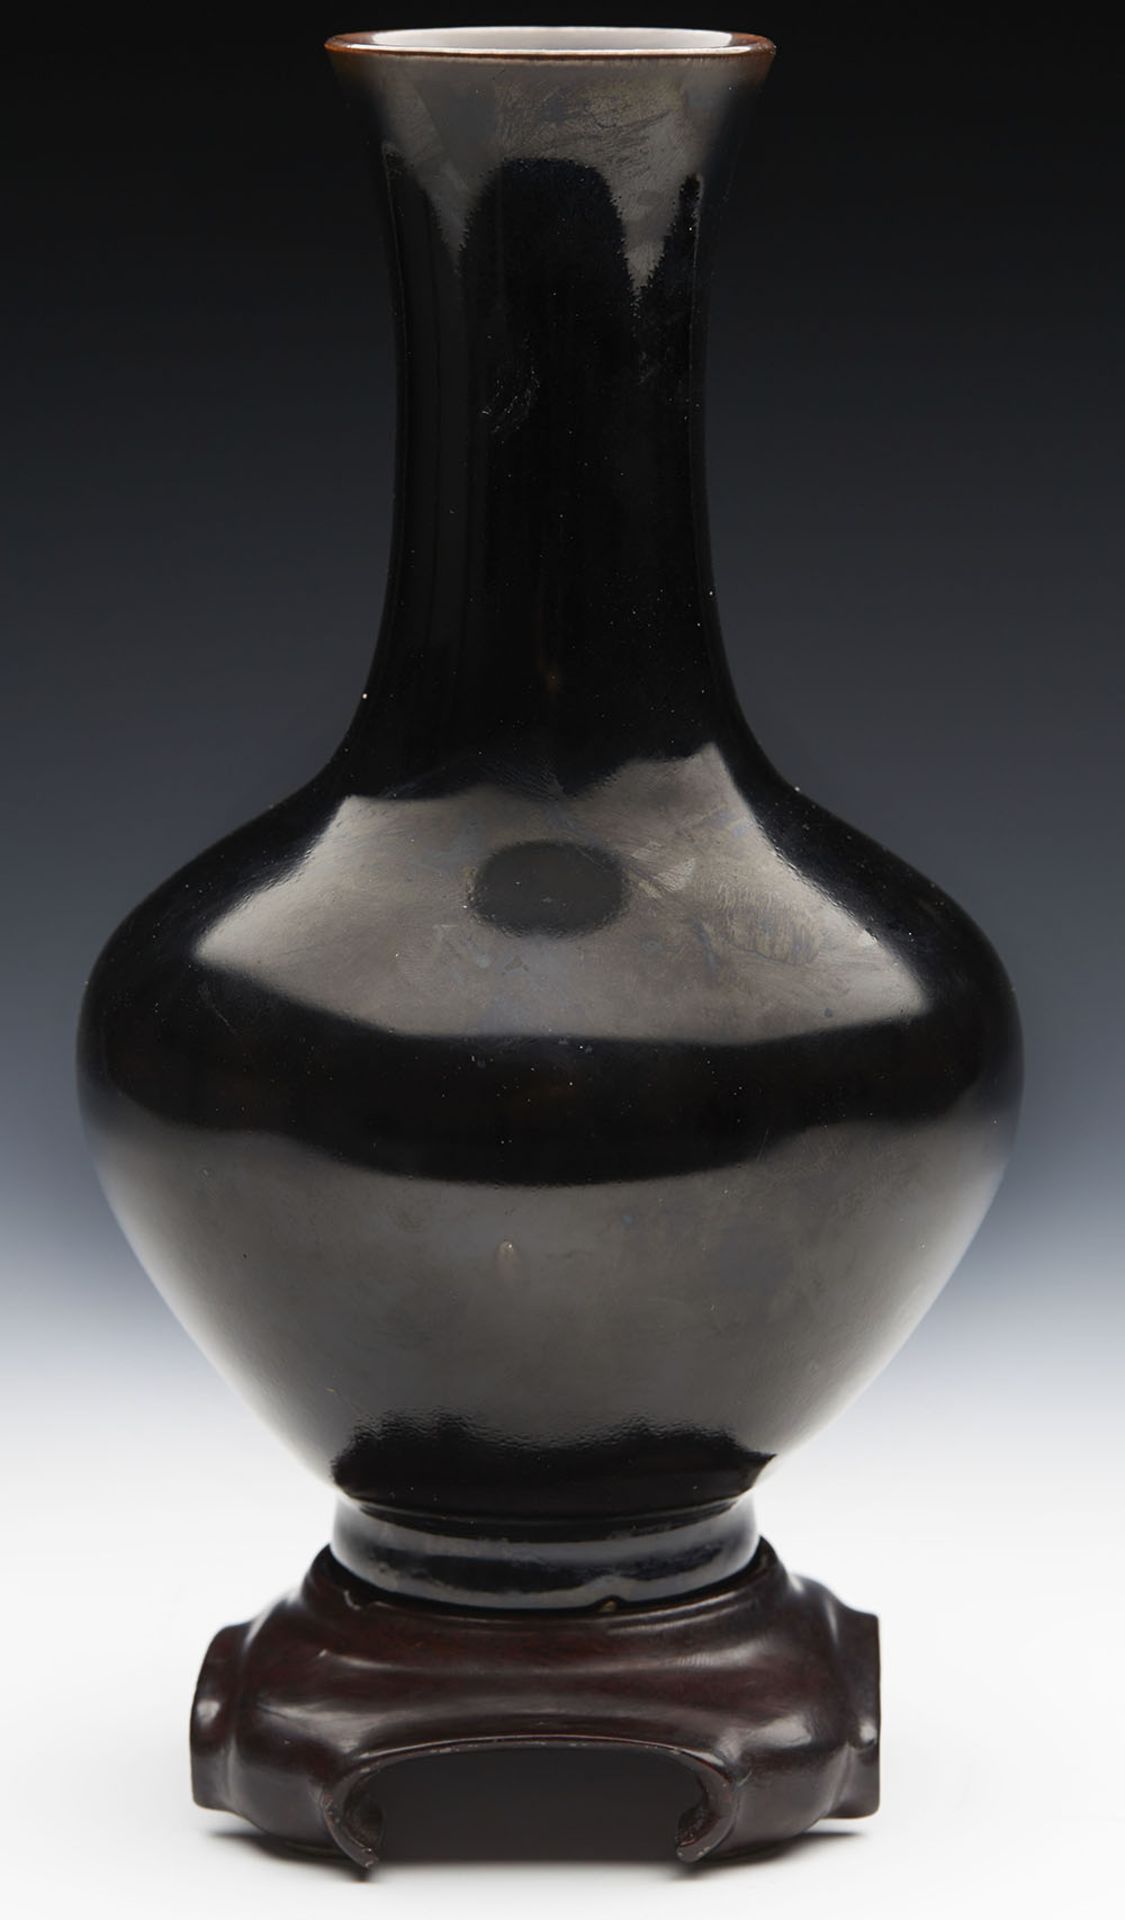 Antique Chinese Kangxi Brown/Black Glazed Bottle Vase 1662-1722 - Image 8 of 8